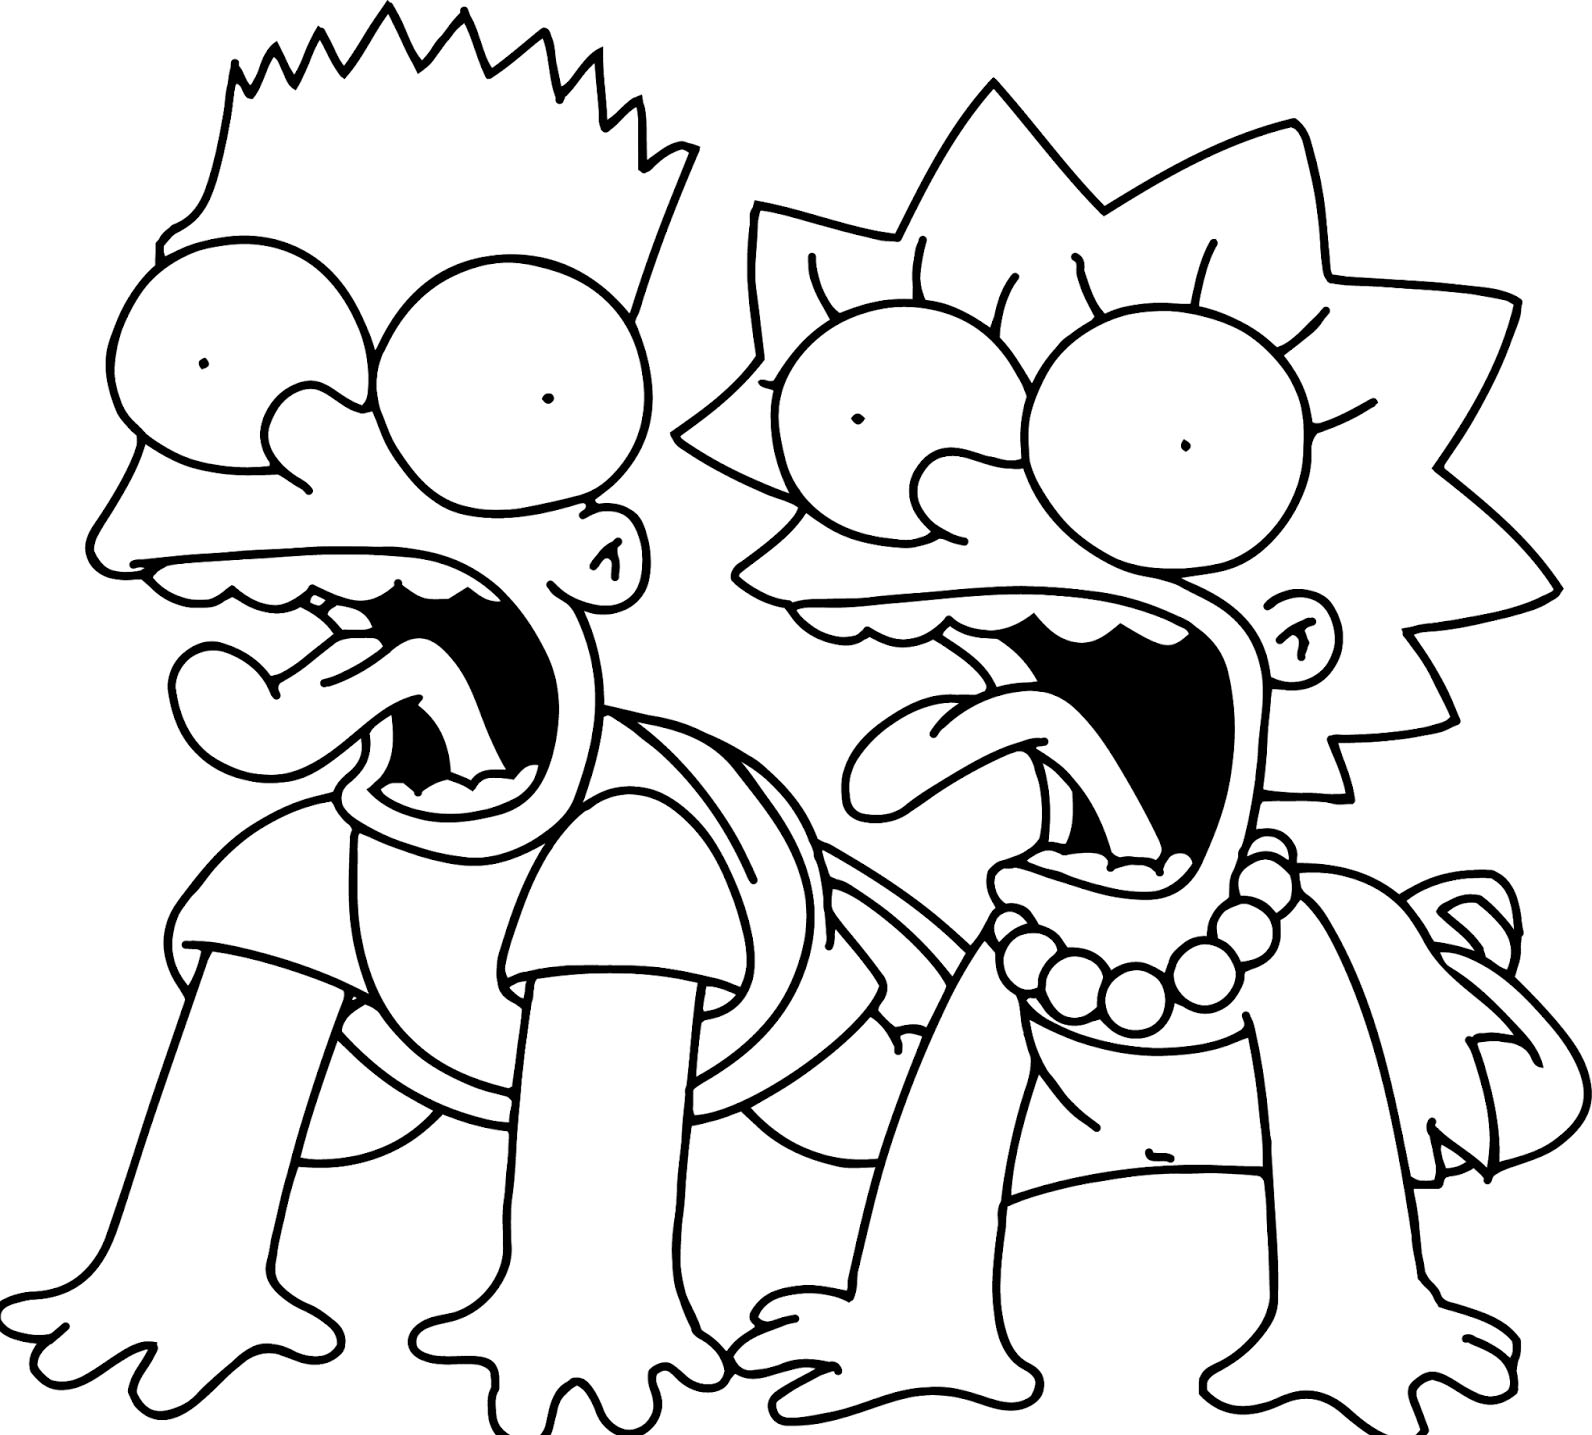 Simpsons Dibujos Para Colorear - Image to u